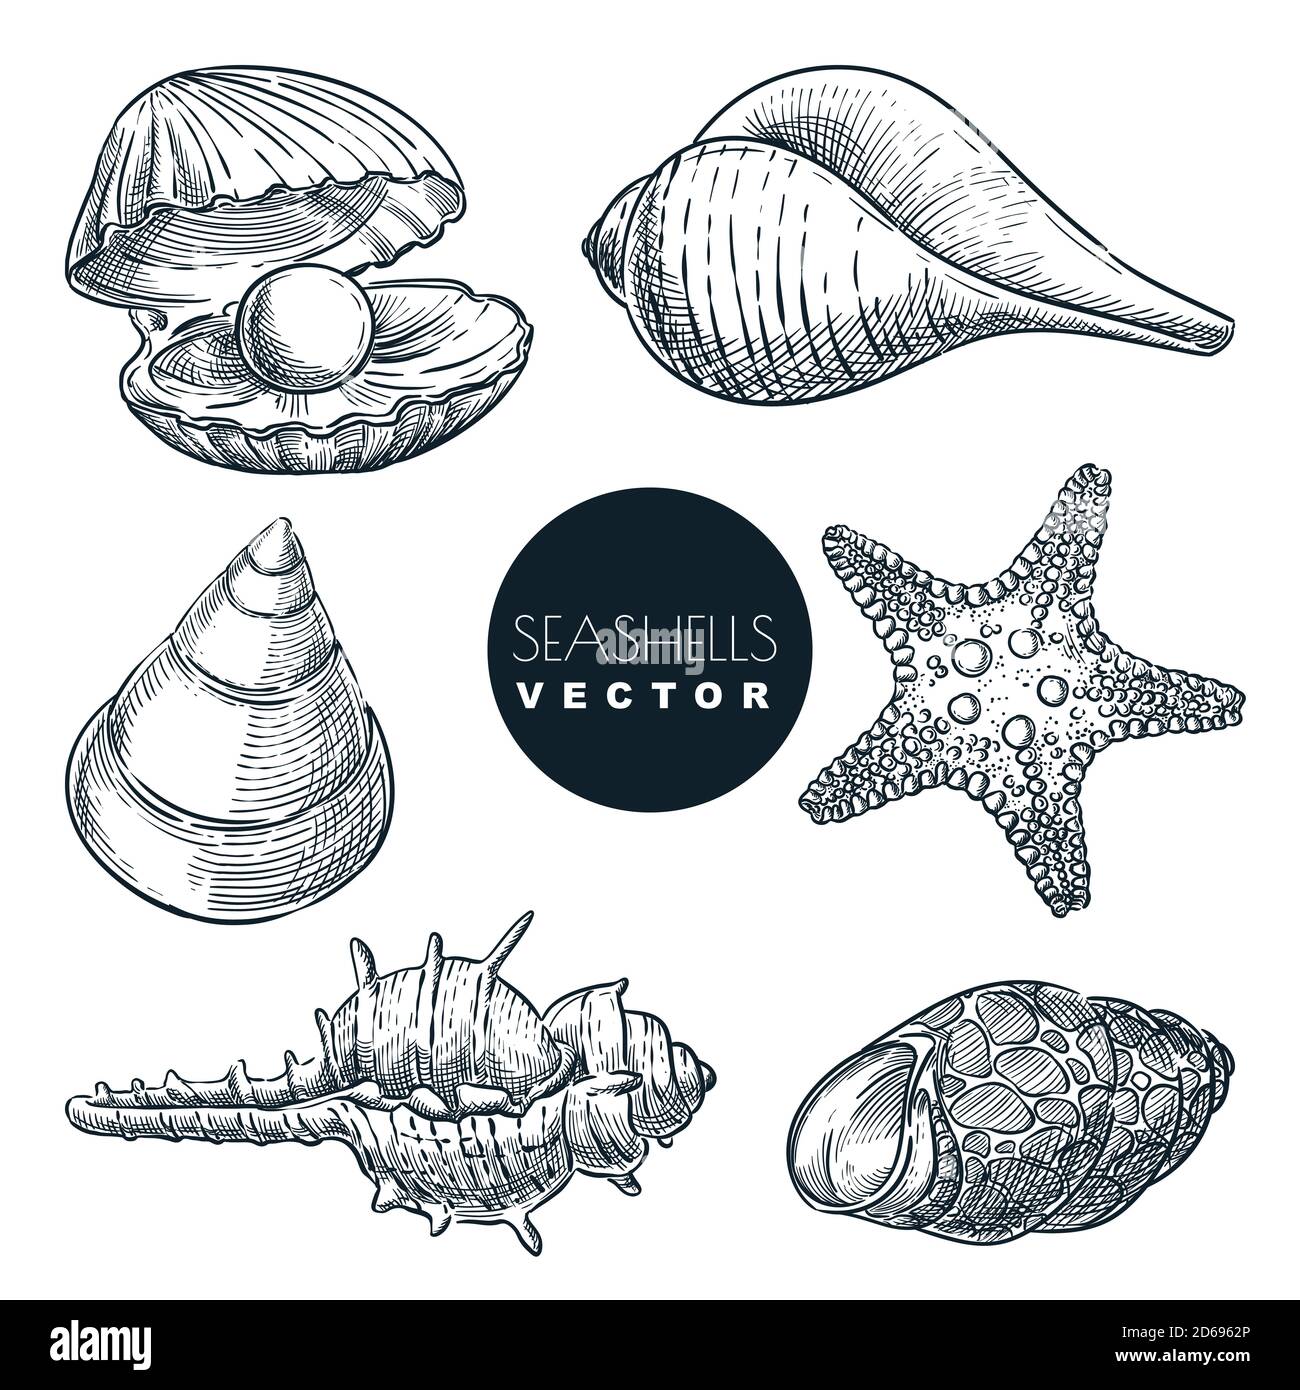 Vektorgrafik Muscheln. Handgezeichnete Meeresmuscheln Sammlung. Sommer Reise Design-Elemente, isoliert auf weißem Hintergrund. Muscheln Vin Stock Vektor